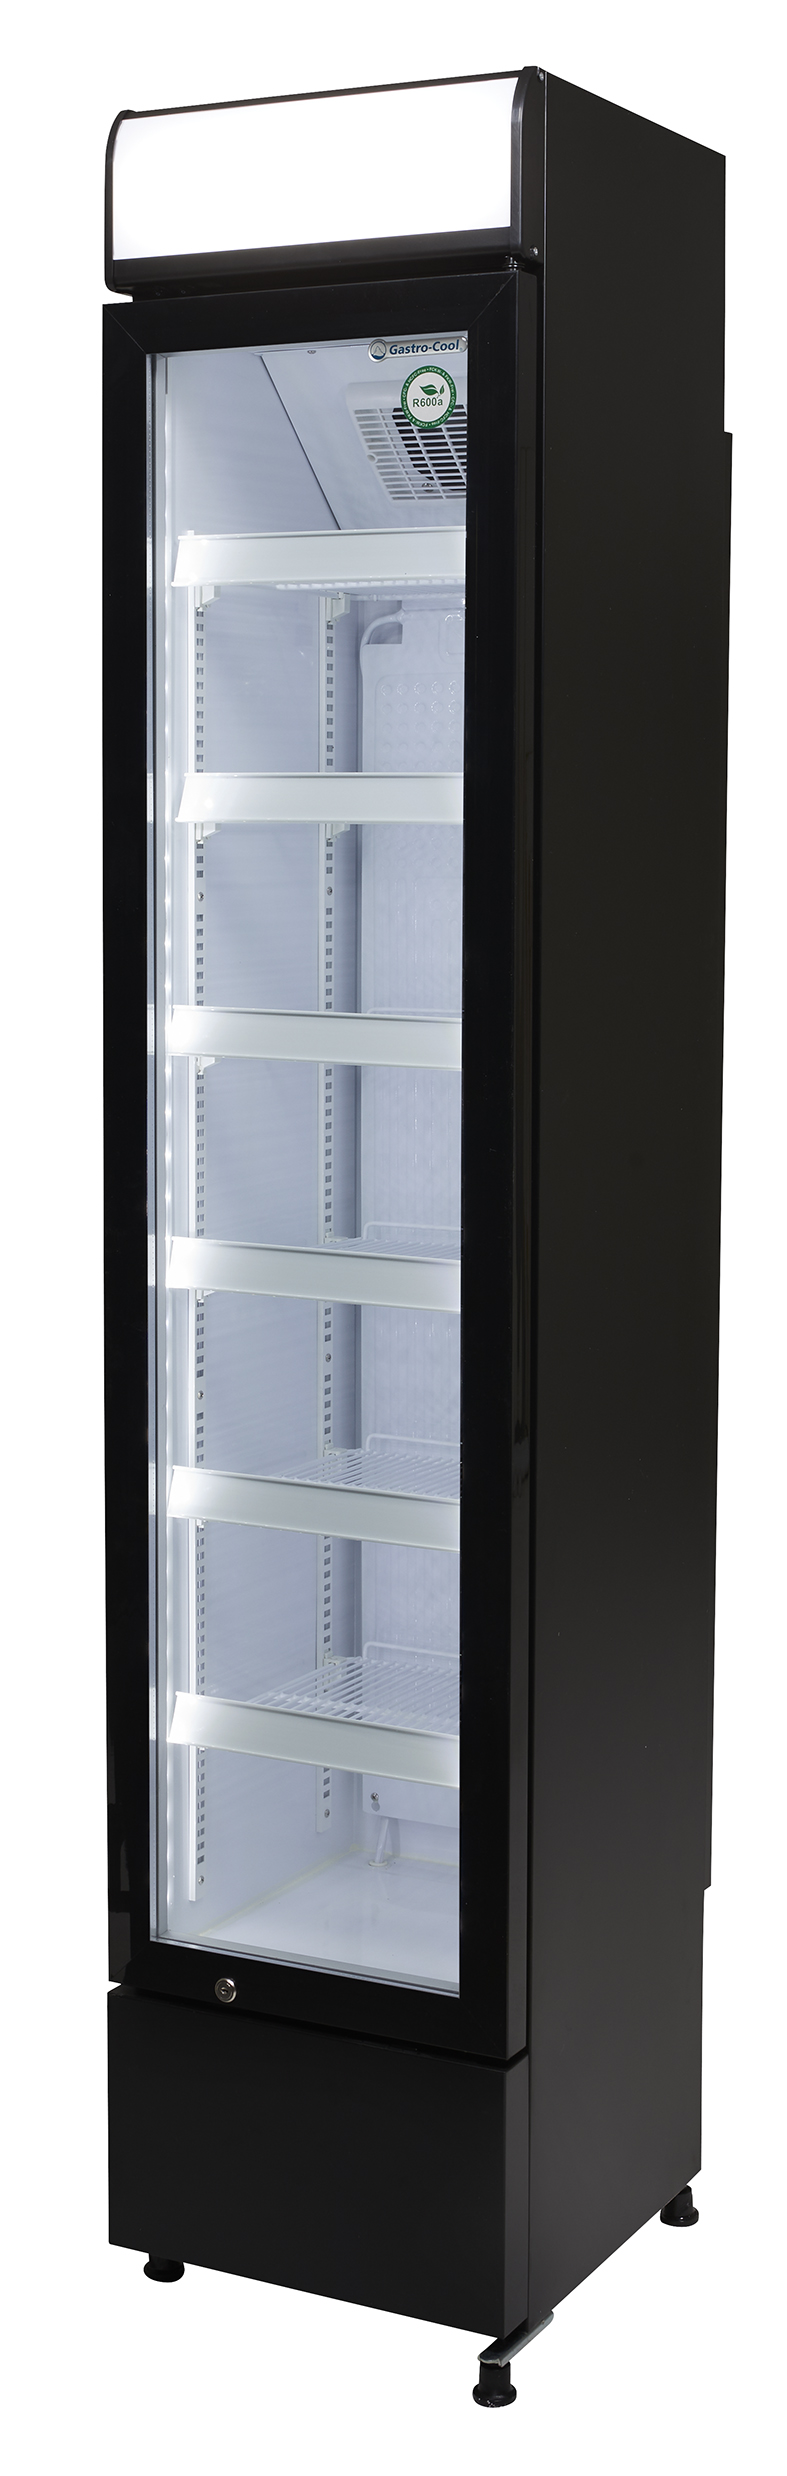 Gastro-Cool - Flaschenkühlschrank - schmal - Werbung - schwarz/weiß - LED - Seitenansicht leer